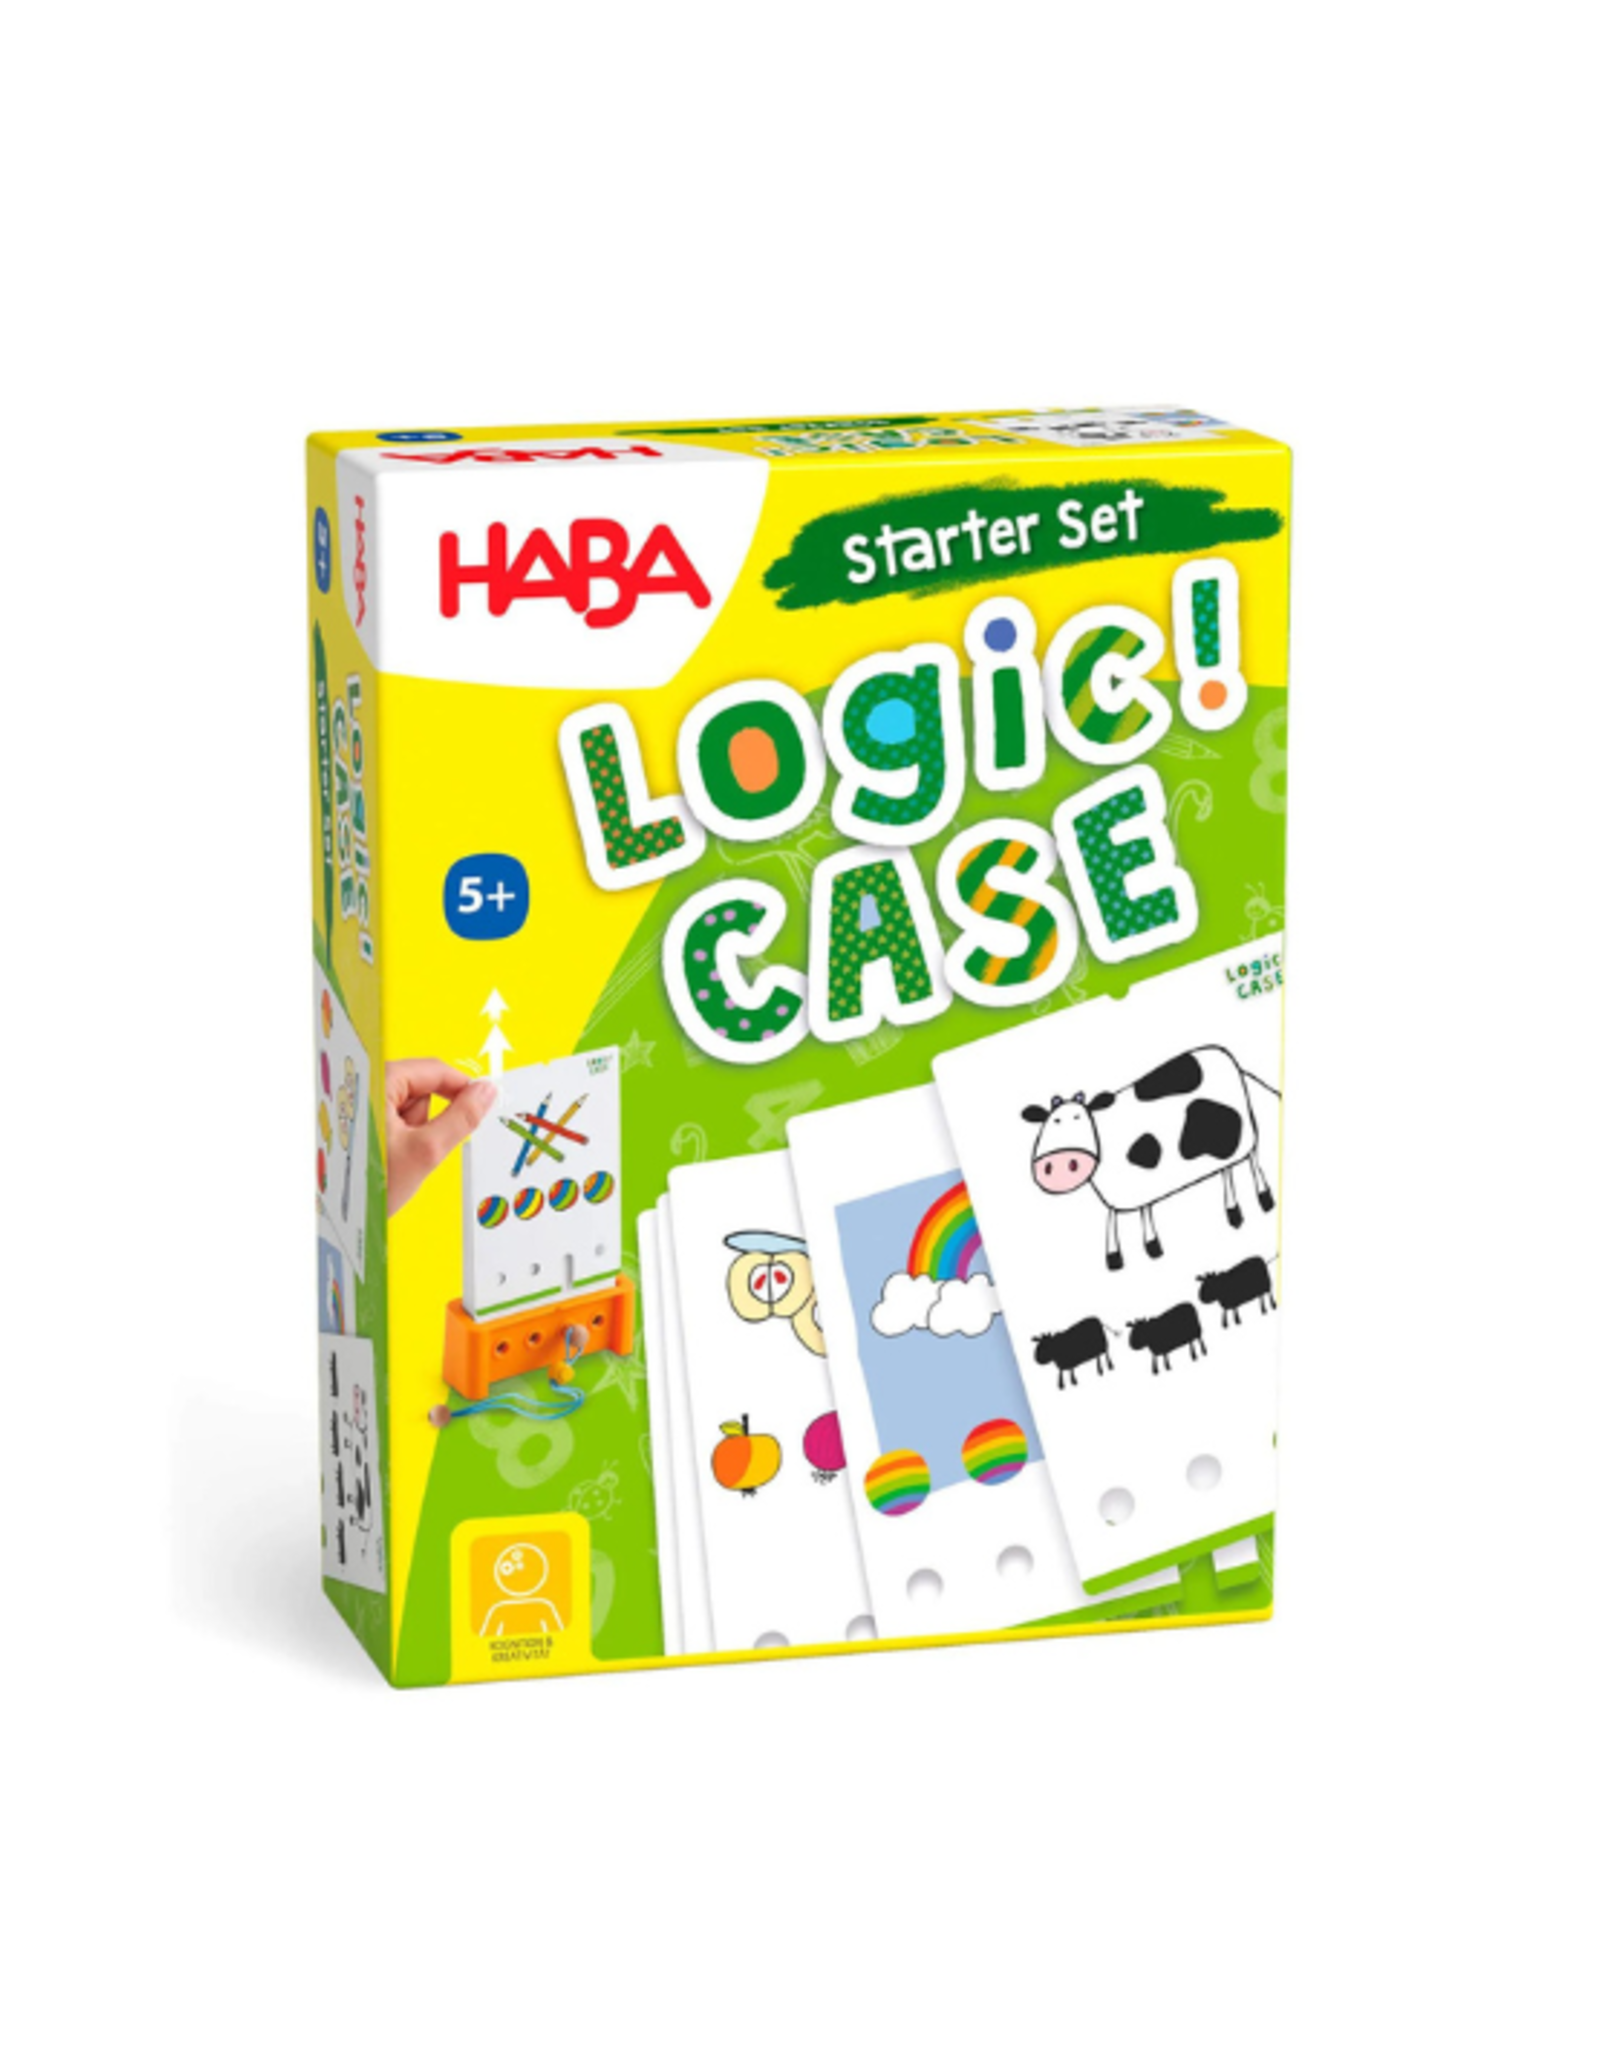 Haba Haba - Logic! Case Starter Set 5+